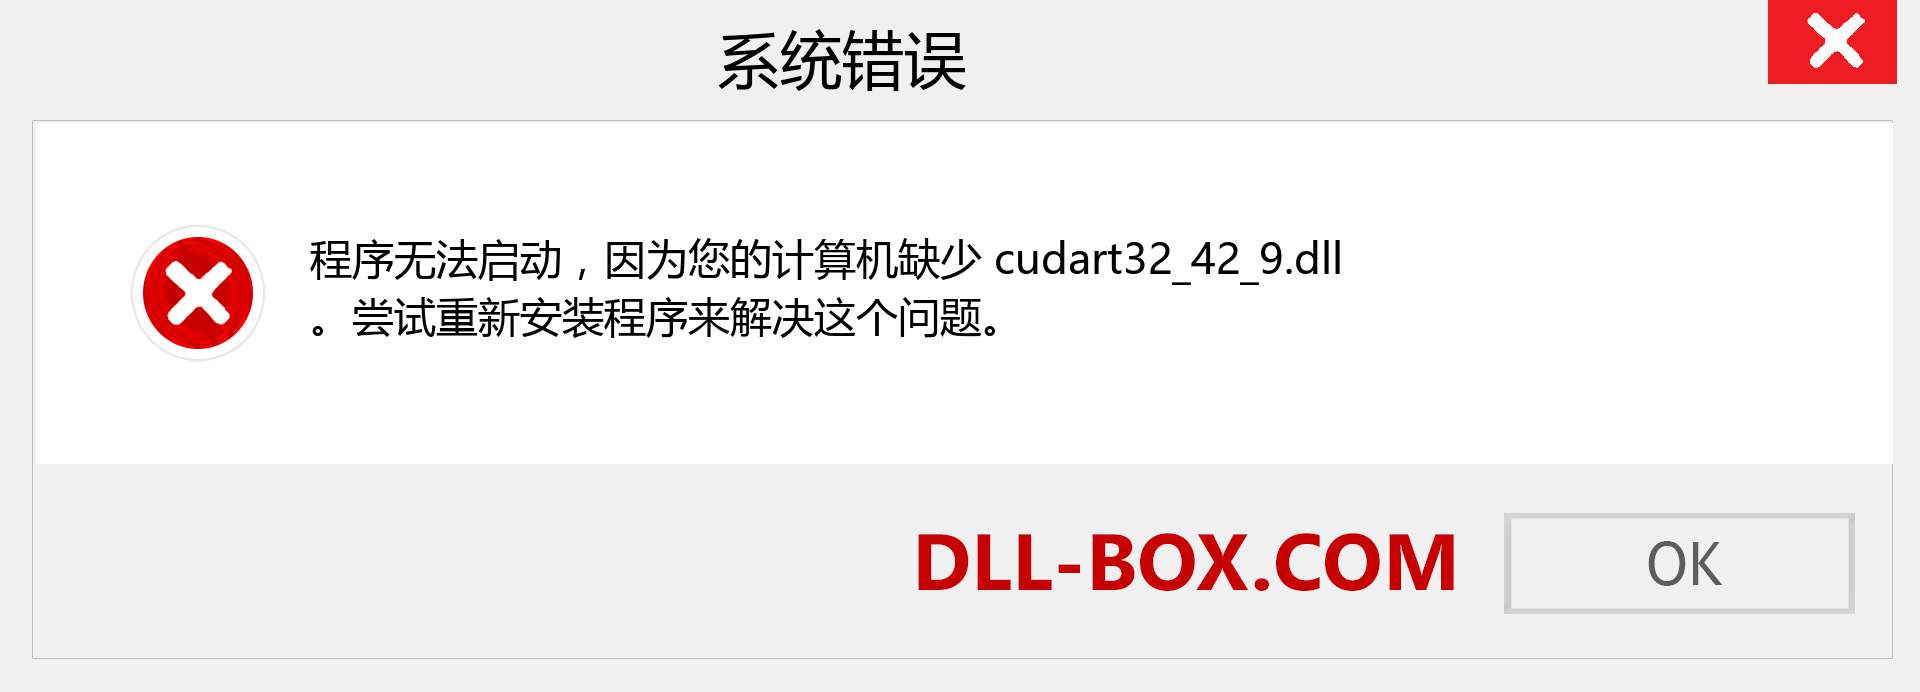 cudart32_42_9.dll 文件丢失？。 适用于 Windows 7、8、10 的下载 - 修复 Windows、照片、图像上的 cudart32_42_9 dll 丢失错误